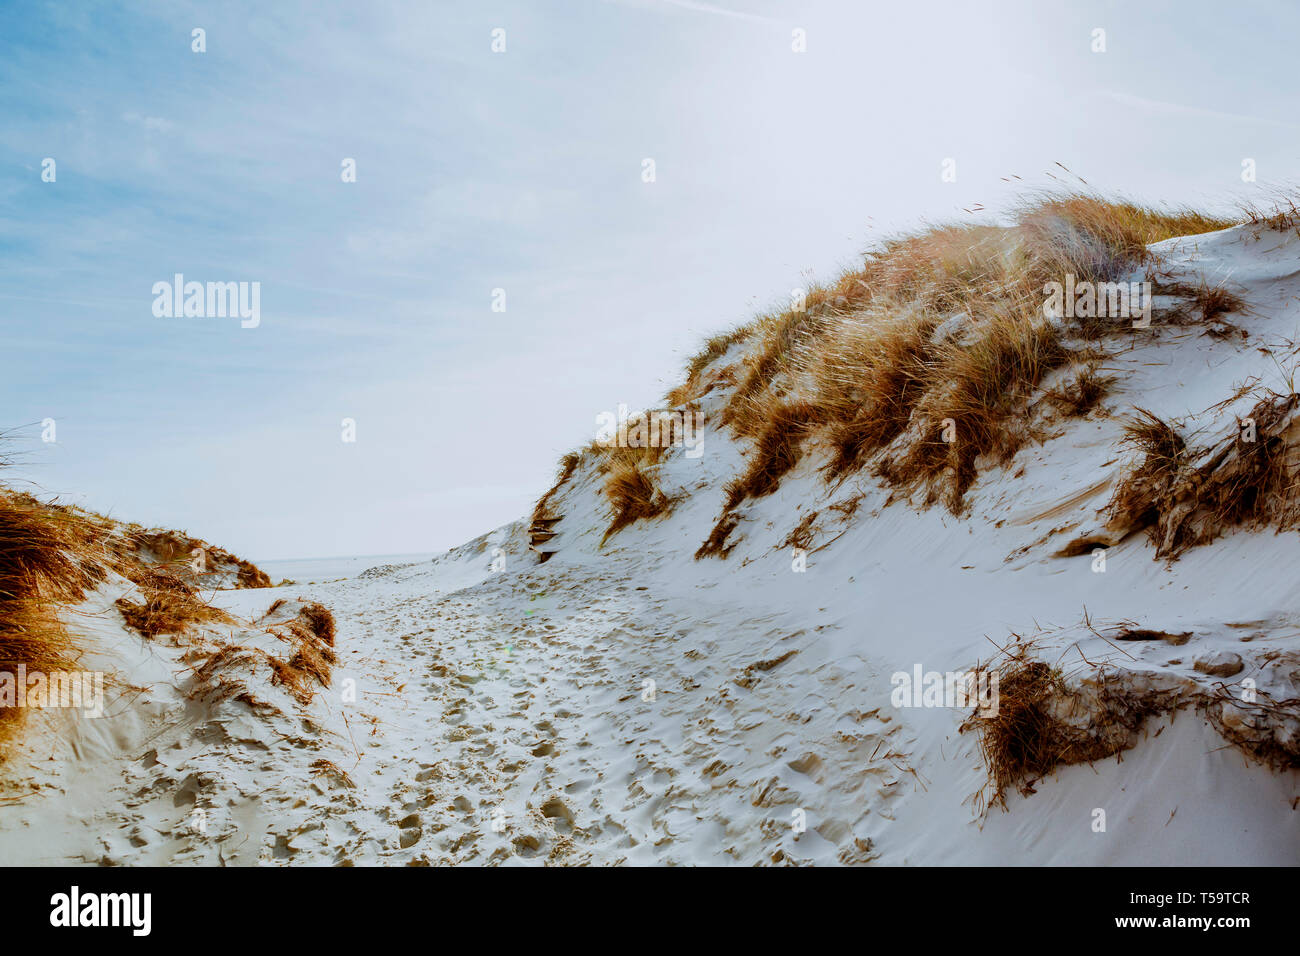 Il paesaggio luminoso di dune di sabbia bianca con il sentiero delle Orme, erba secca su collinette e il sole nel cielo in mare costa. Pittoresca vista dal basso angolo Foto Stock